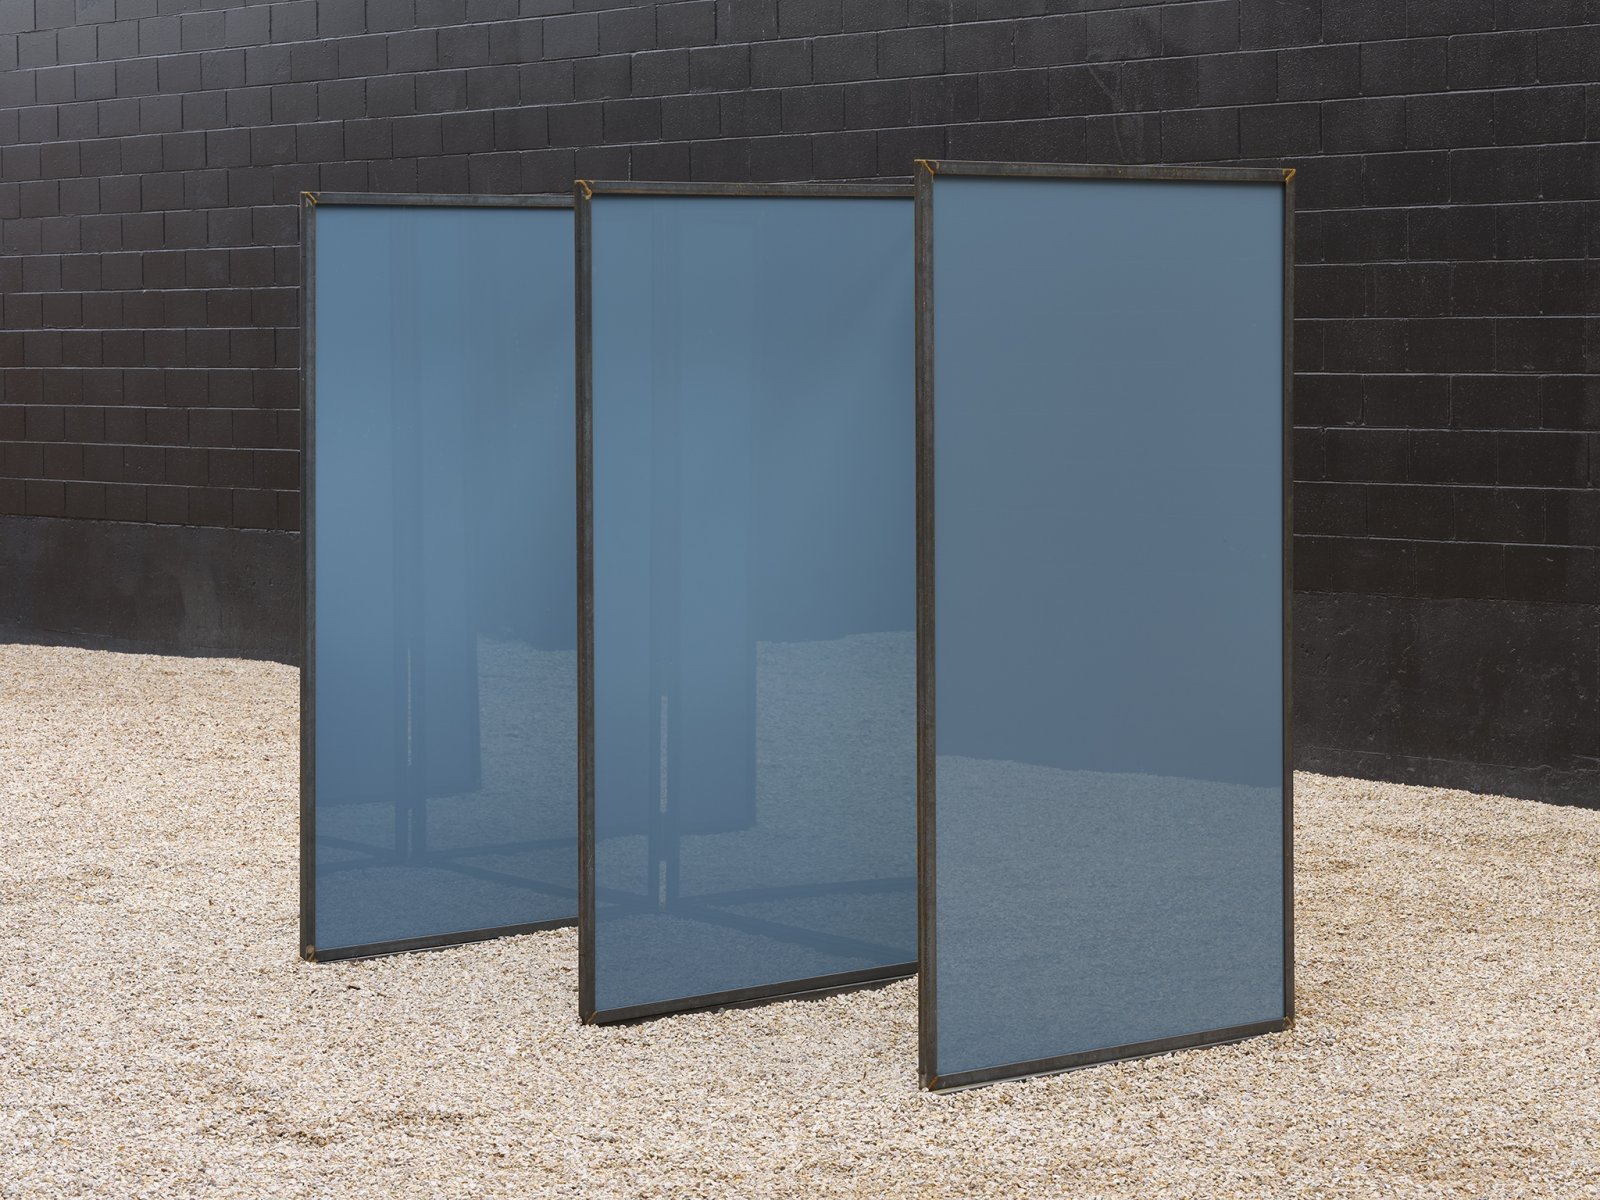 ​Abbas Akhavan, Trough, 2019, steel, mirrors, 84 x 150 x 48 in. (213 x 380 x 122 cm) by Abbas Akhavan